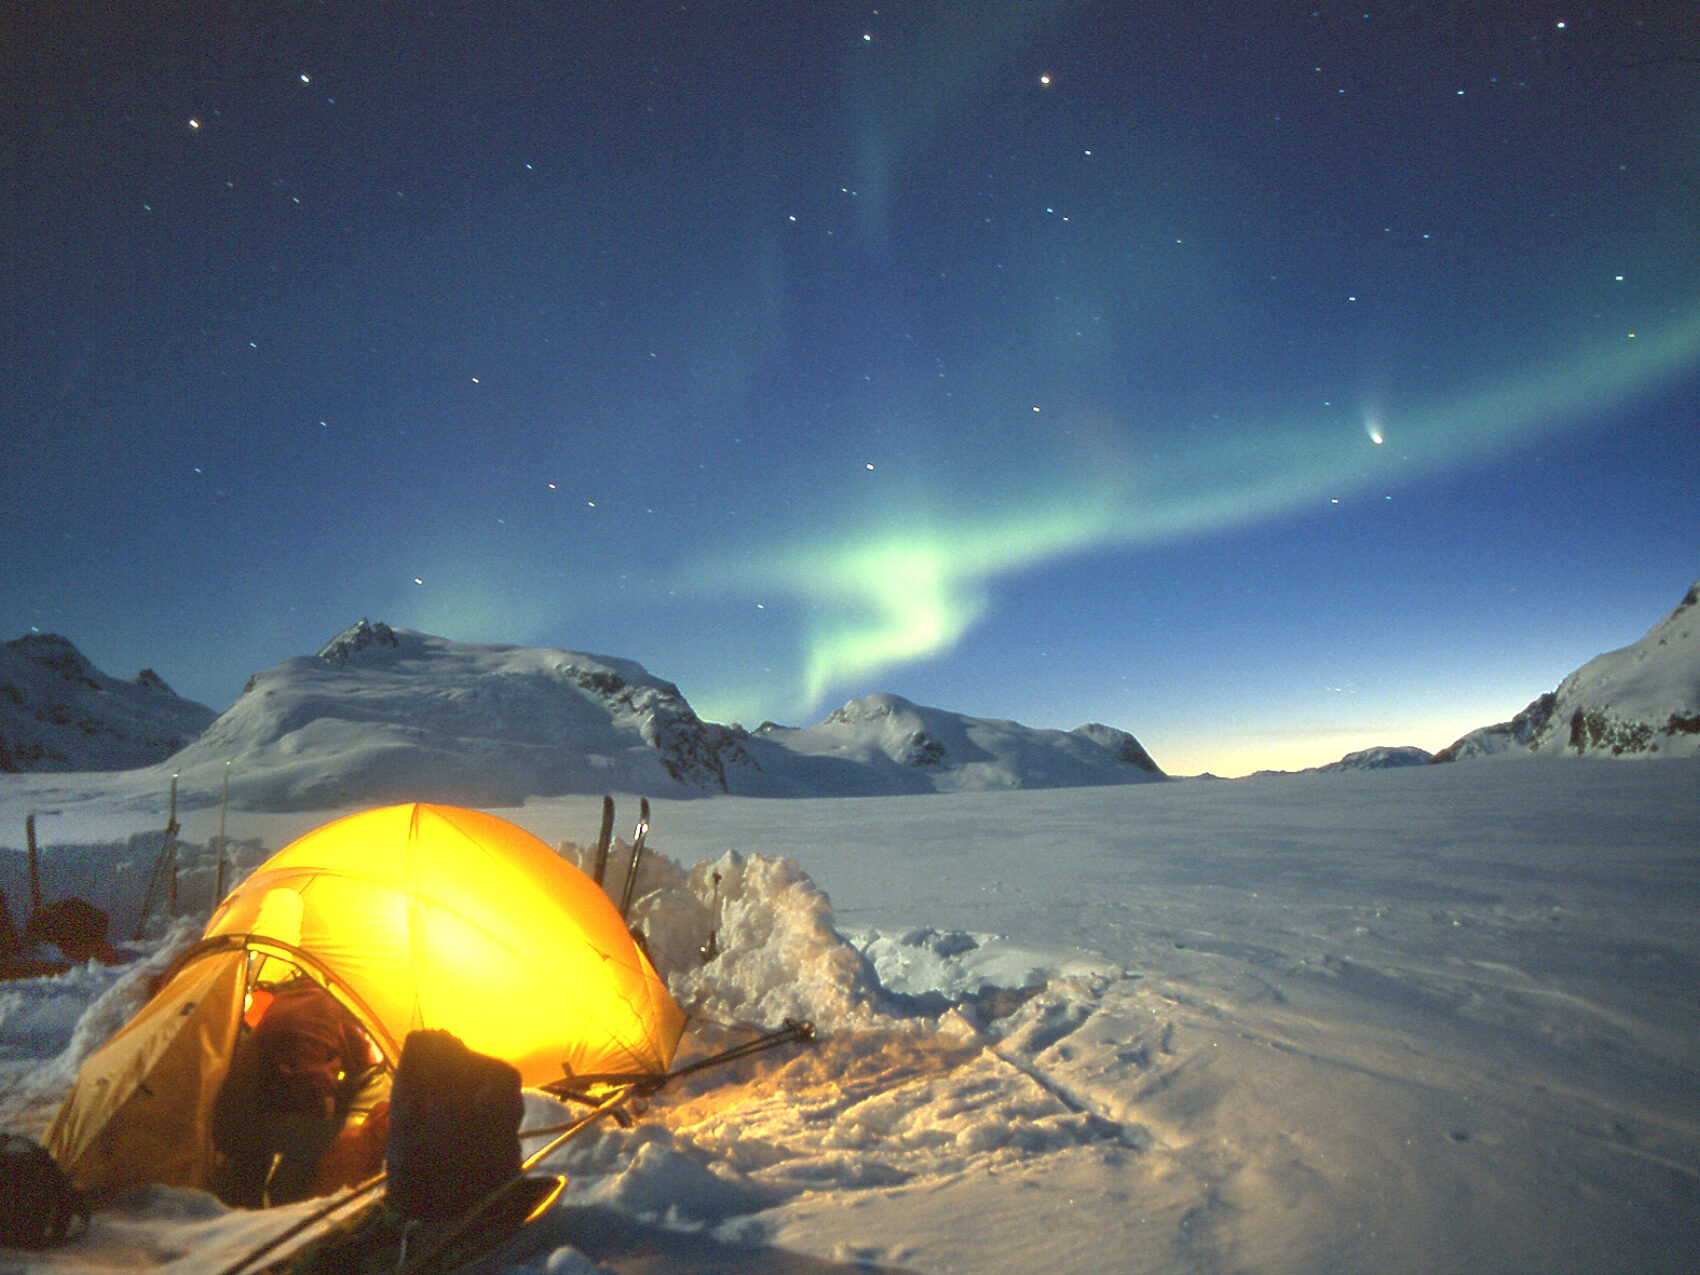 Ostgrönland Nordlichter beim Zeltwandern leuchten in grüner Farbe am Horizont. Zelt leuchtet gelb umgeben von viel Schnee. Sternenklare Nacht. Kleine Berge im Hintergrund.